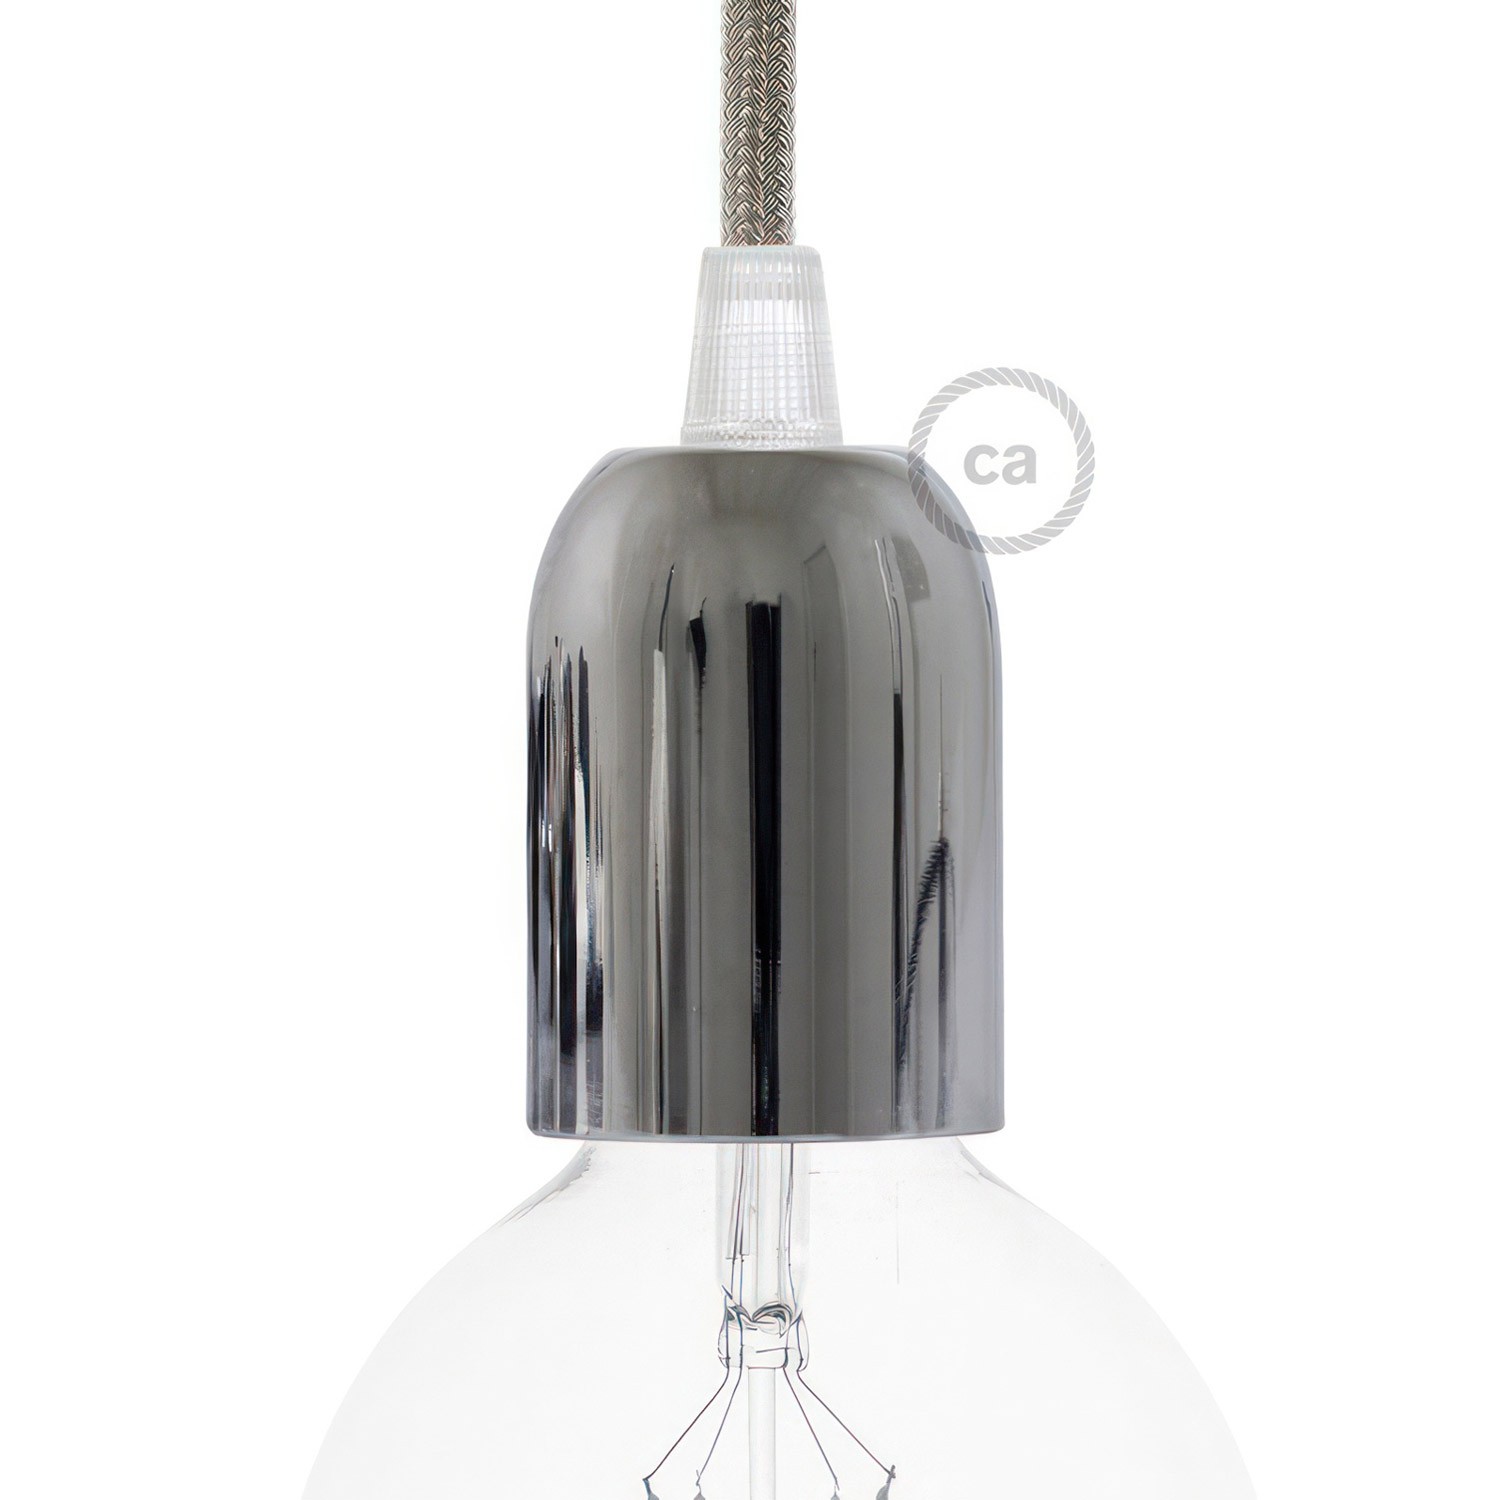 Kit halvsfärisk lamphållare E27 i lackerad metall